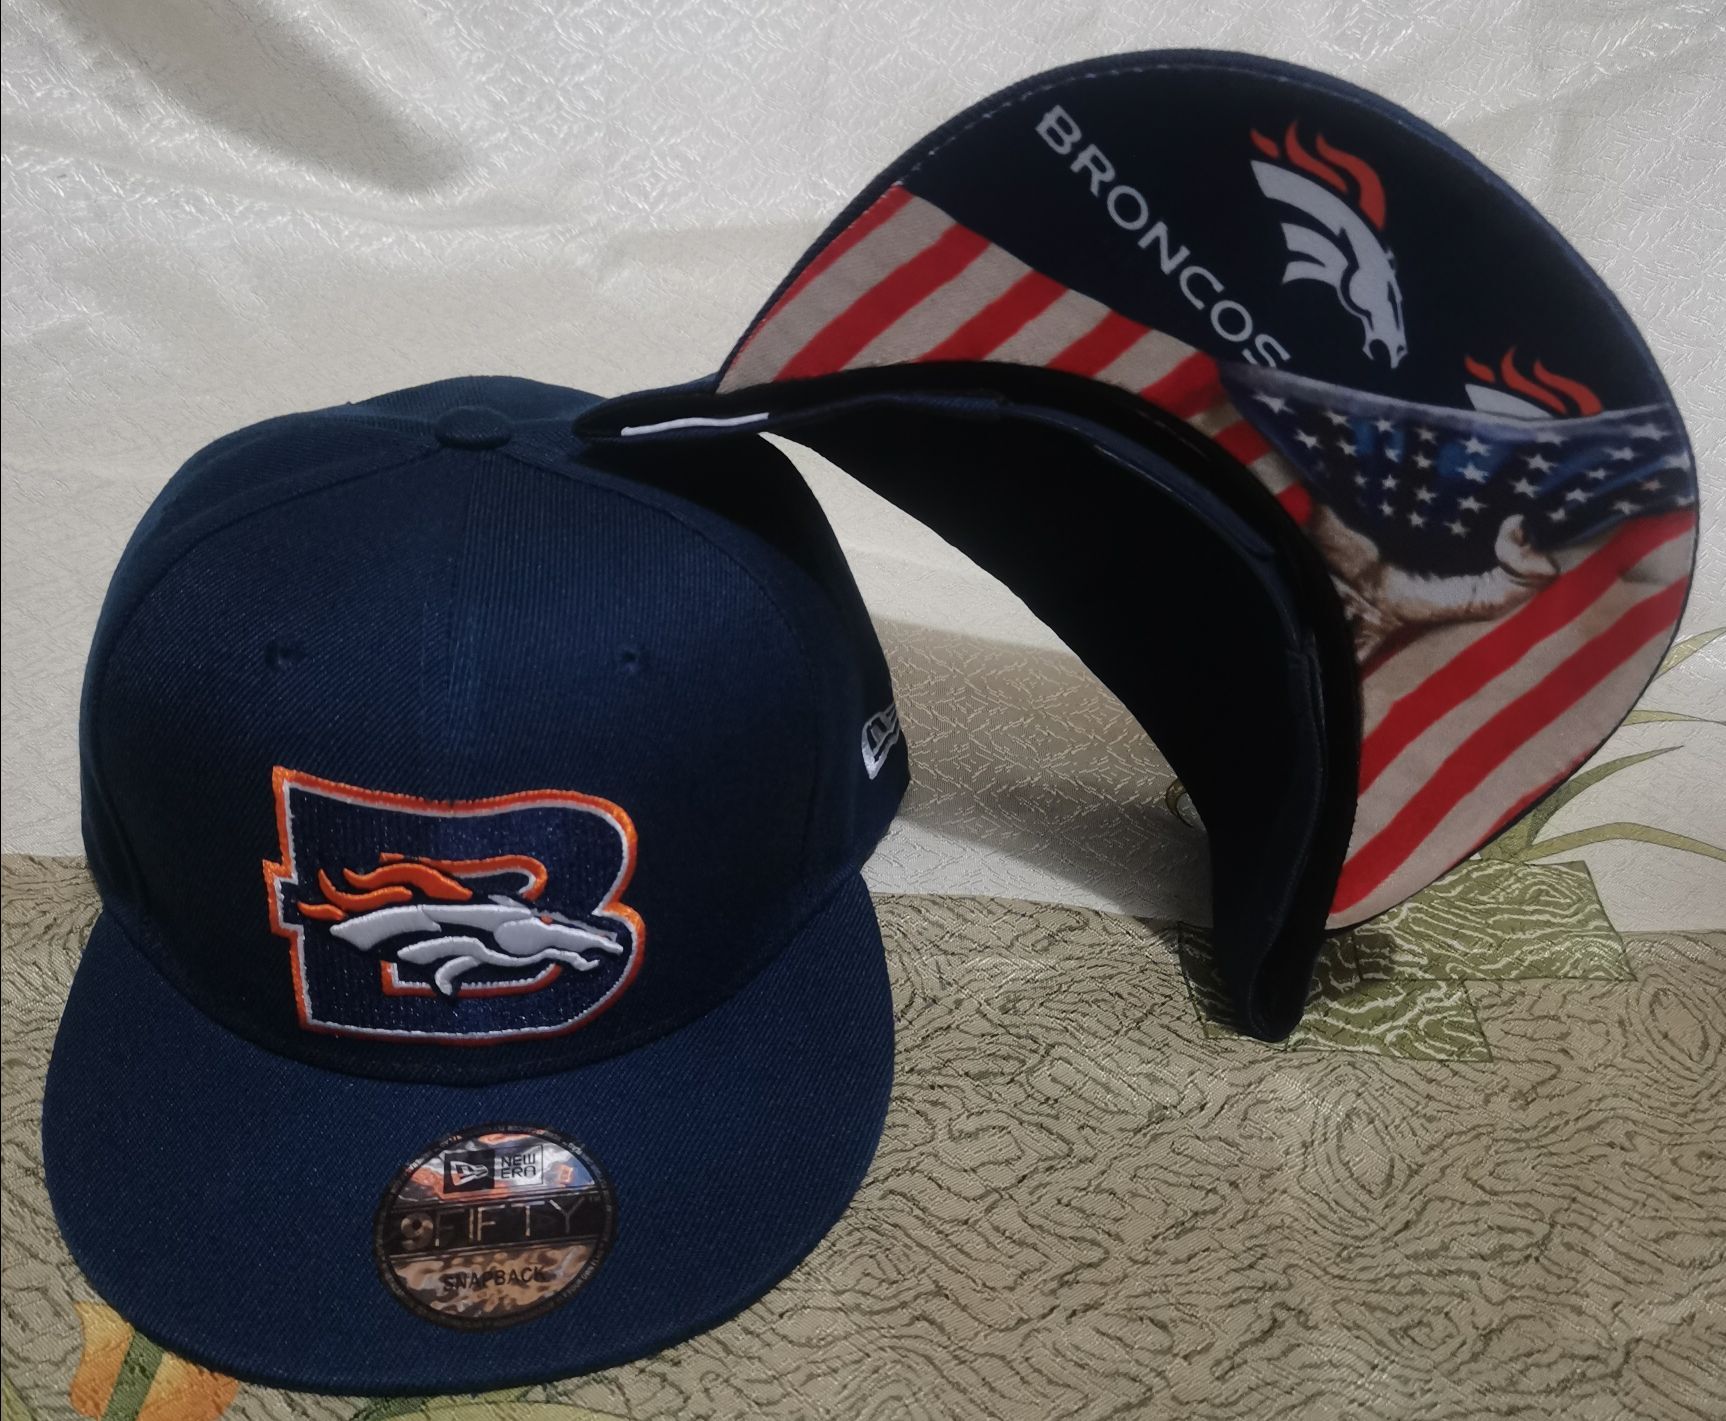 2021 NFL Denver Broncos #15 hat